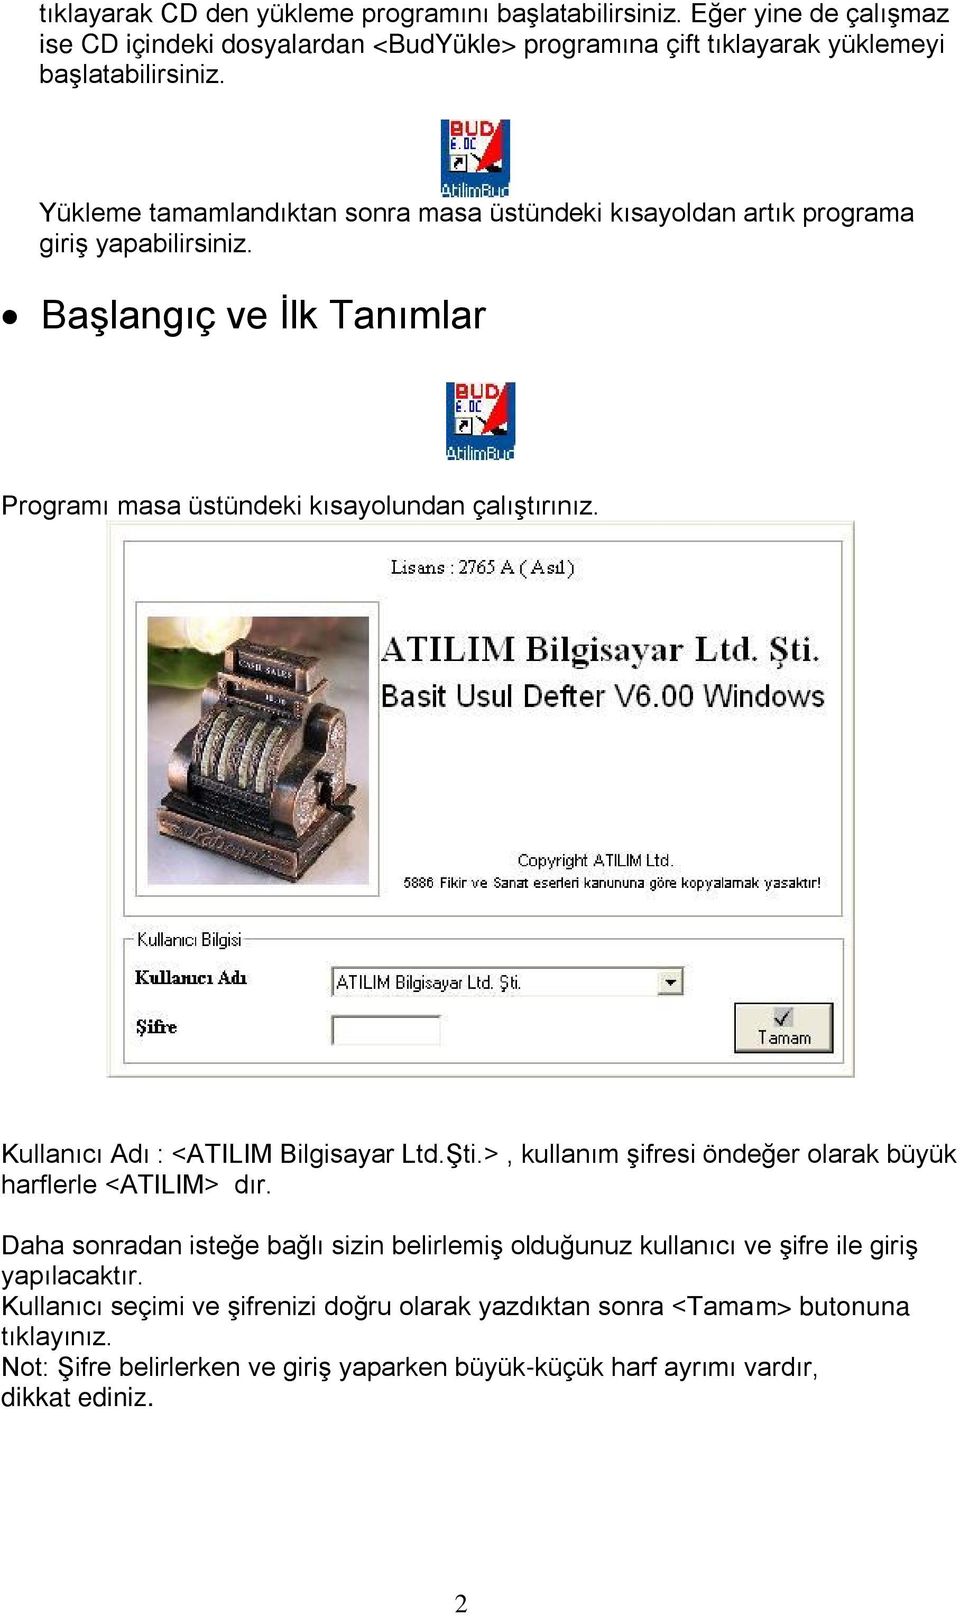 Kullanıcı Adı : <ATILIM Bilgisayar Ltd.Şti.>, kullanım şifresi öndeğer olarak büyük harflerle <ATILIM> dır.